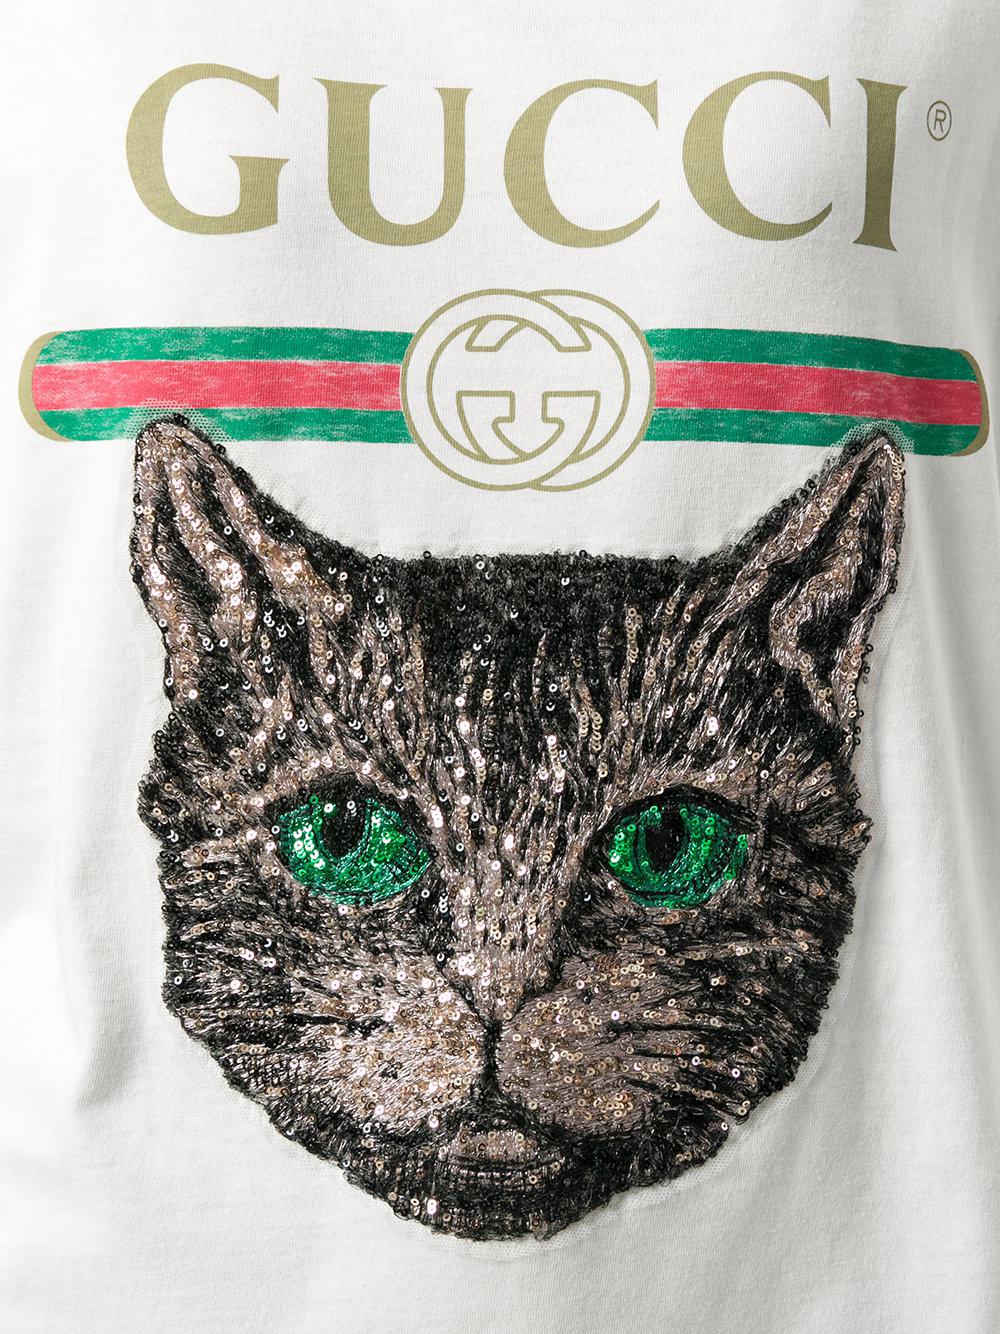 gucci mystic cat shirt